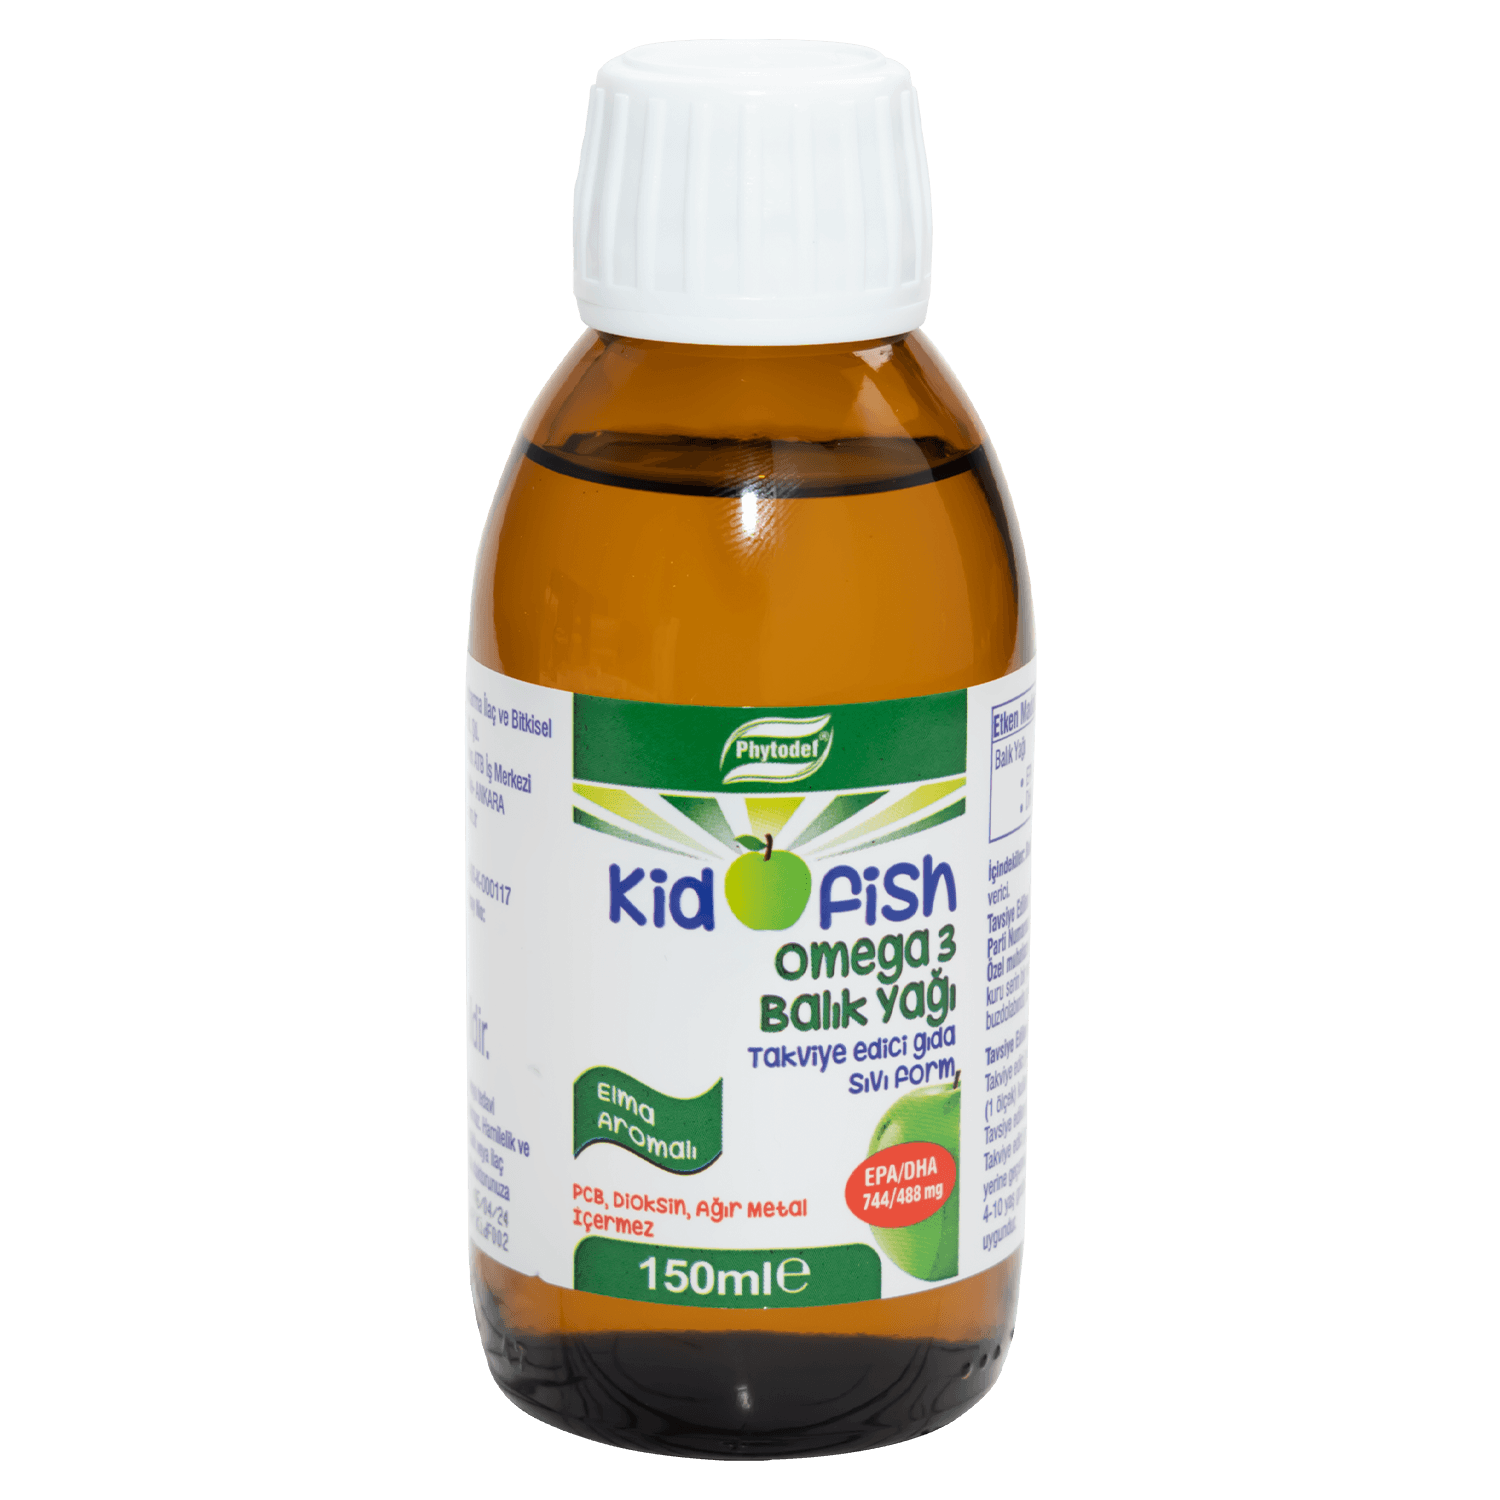 Kidofish Omega 3 İzlanda Menşeli Balık Yağı EPA/DHA 744/488 - 150 ml (Elma Aromalı) 